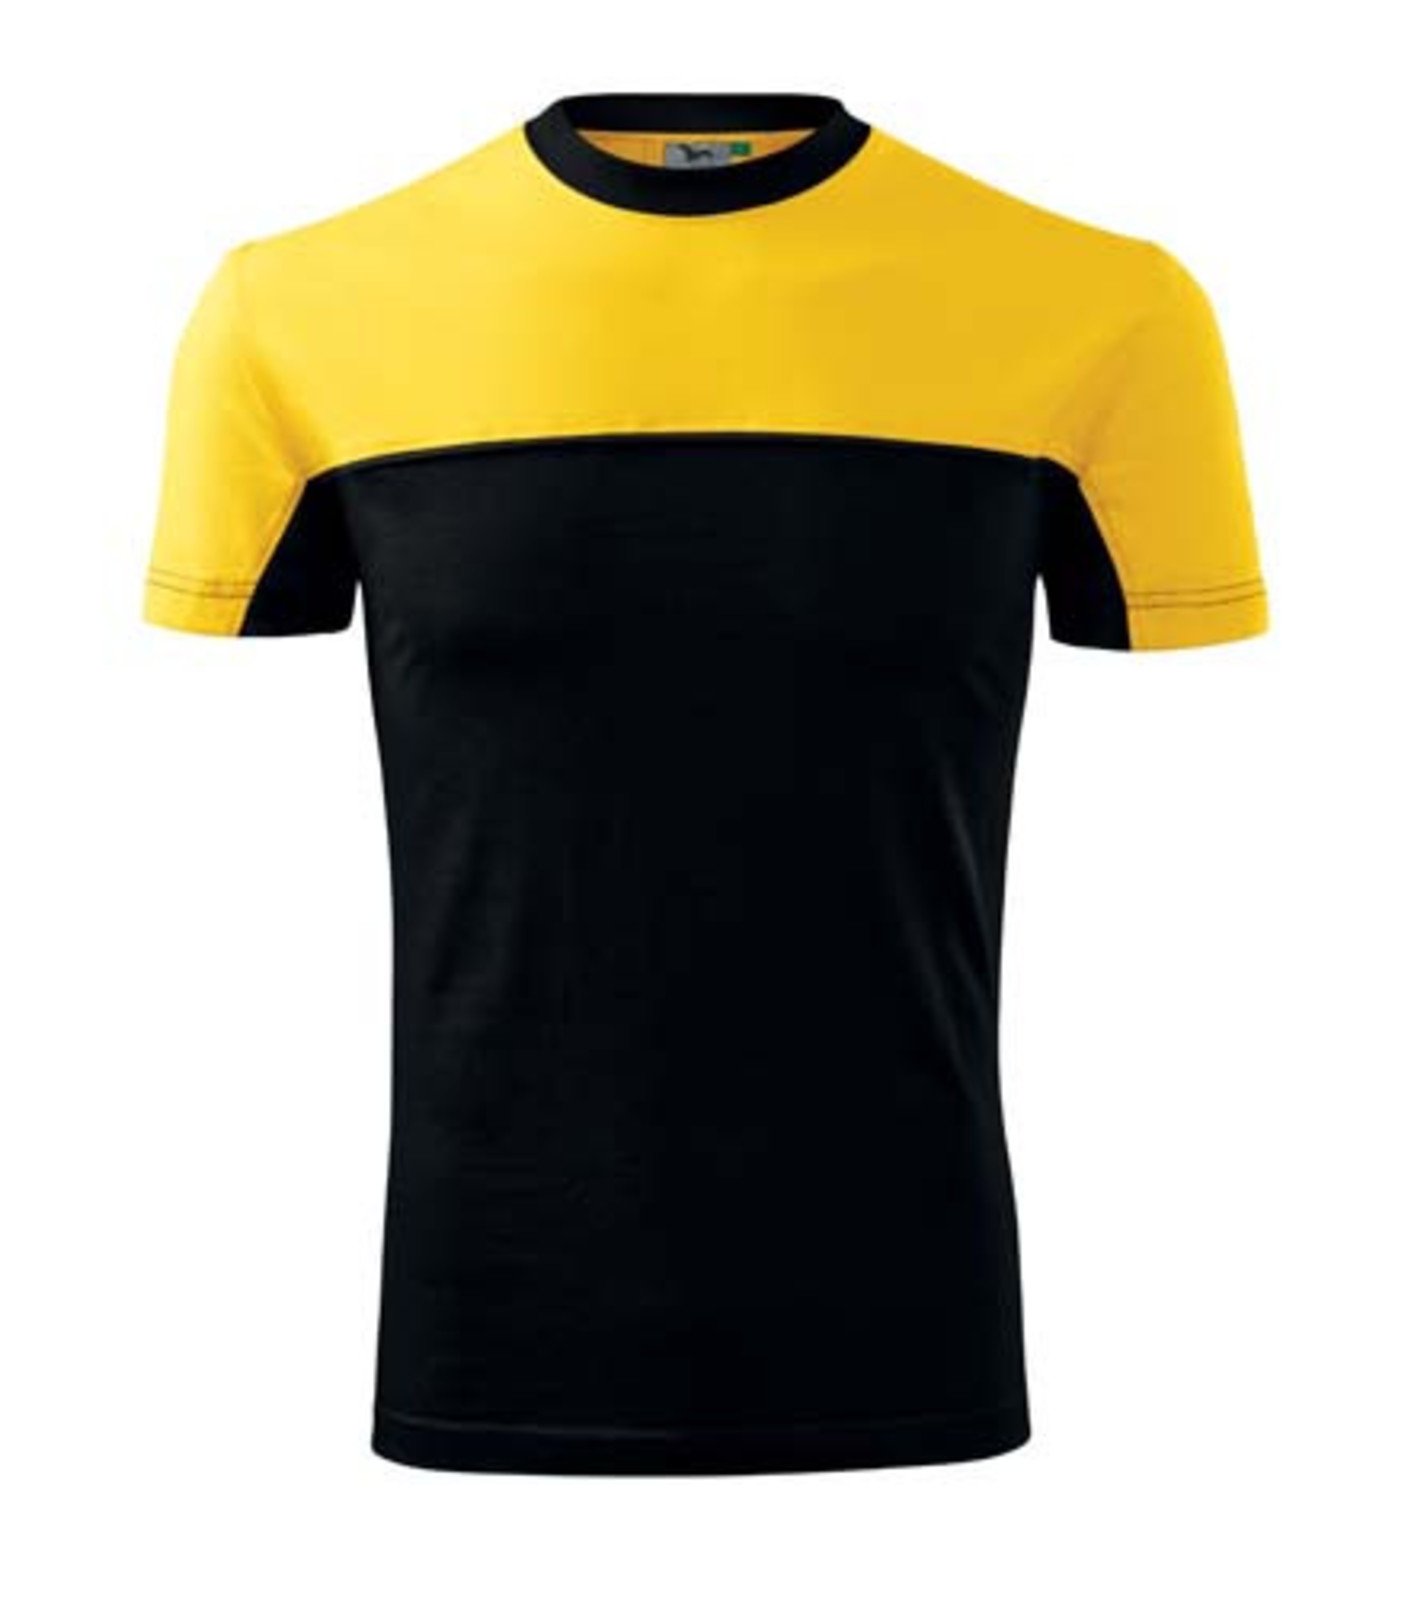 Unisex tričko Rimeck Colormix 109 - veľkosť: S, farba: čierna/žltá